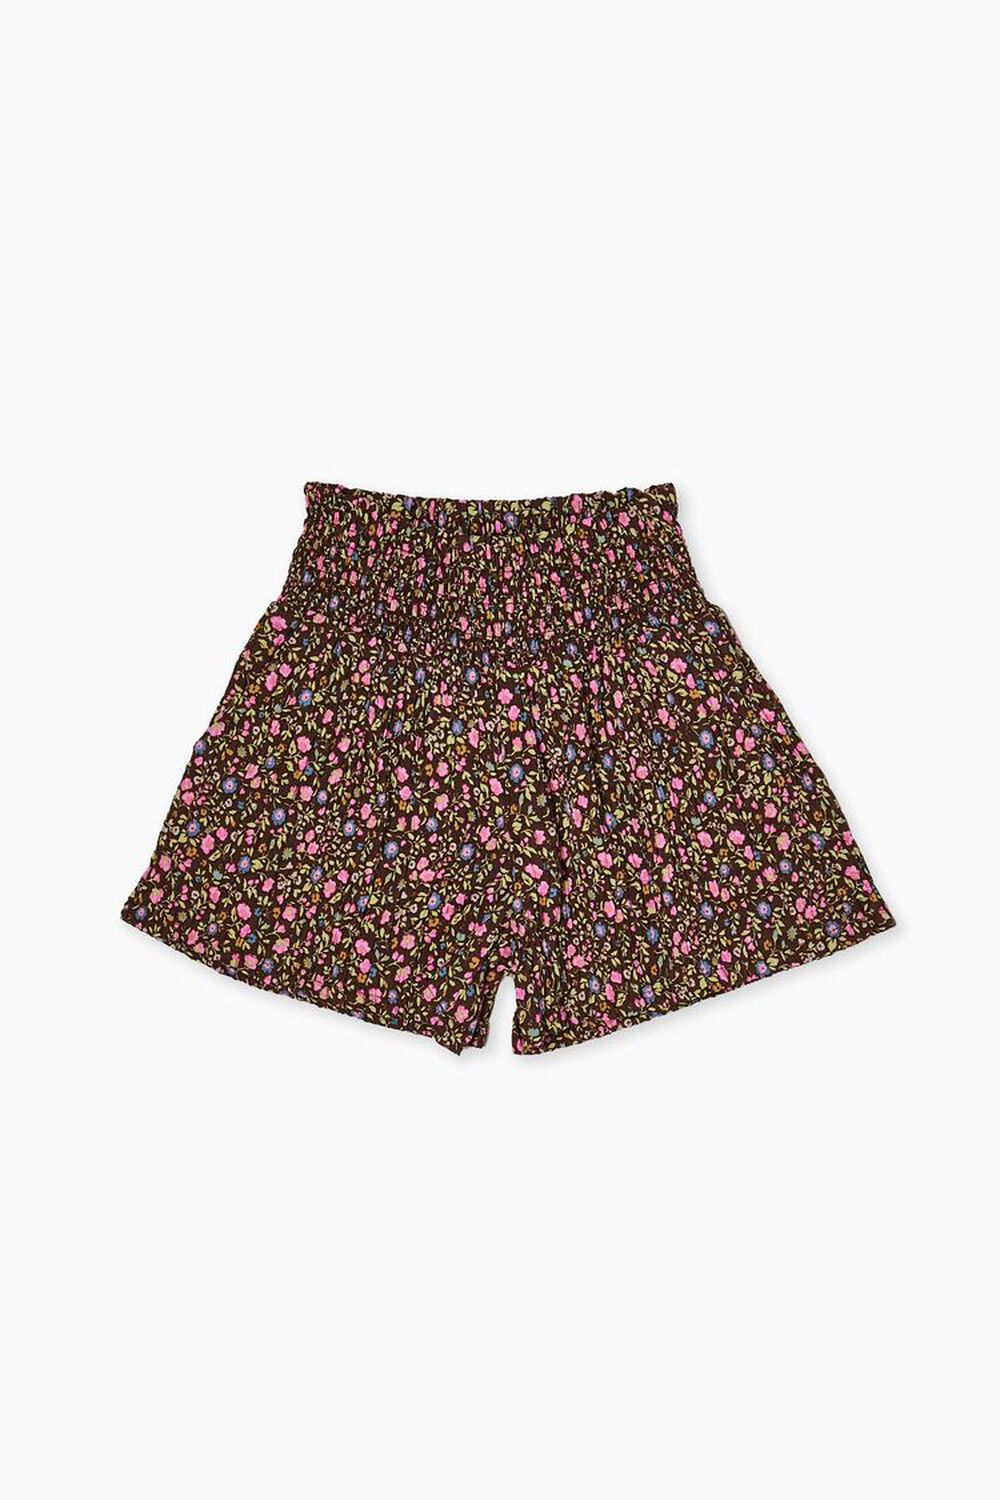 BROWN/MULTI Girls Floral Print Shorts (Kids), image 1